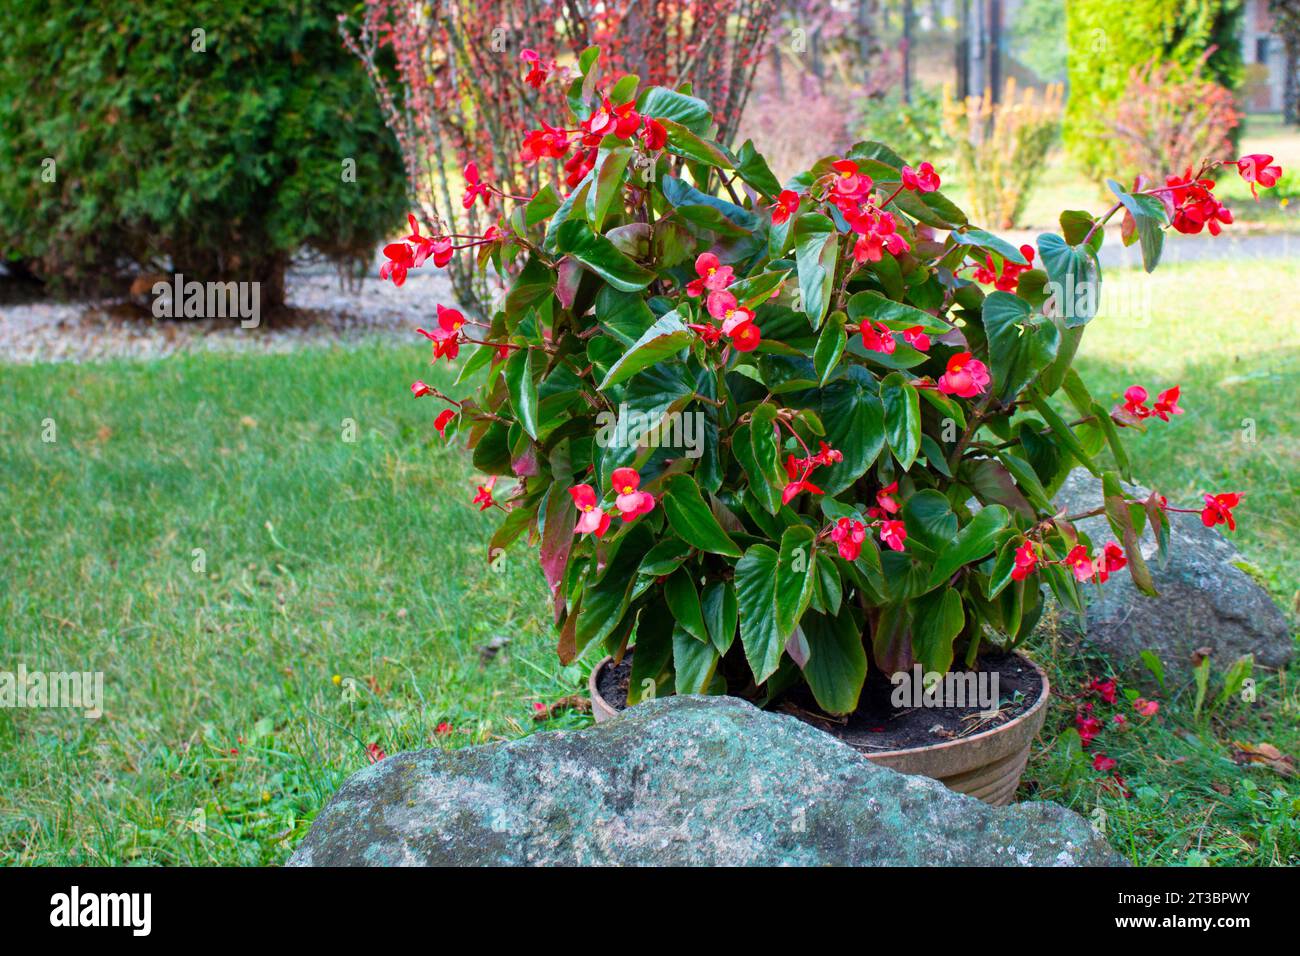 Red impatiens flower bed in garden, impatiens growing in pot between stones. Landscape design. Stock Photo